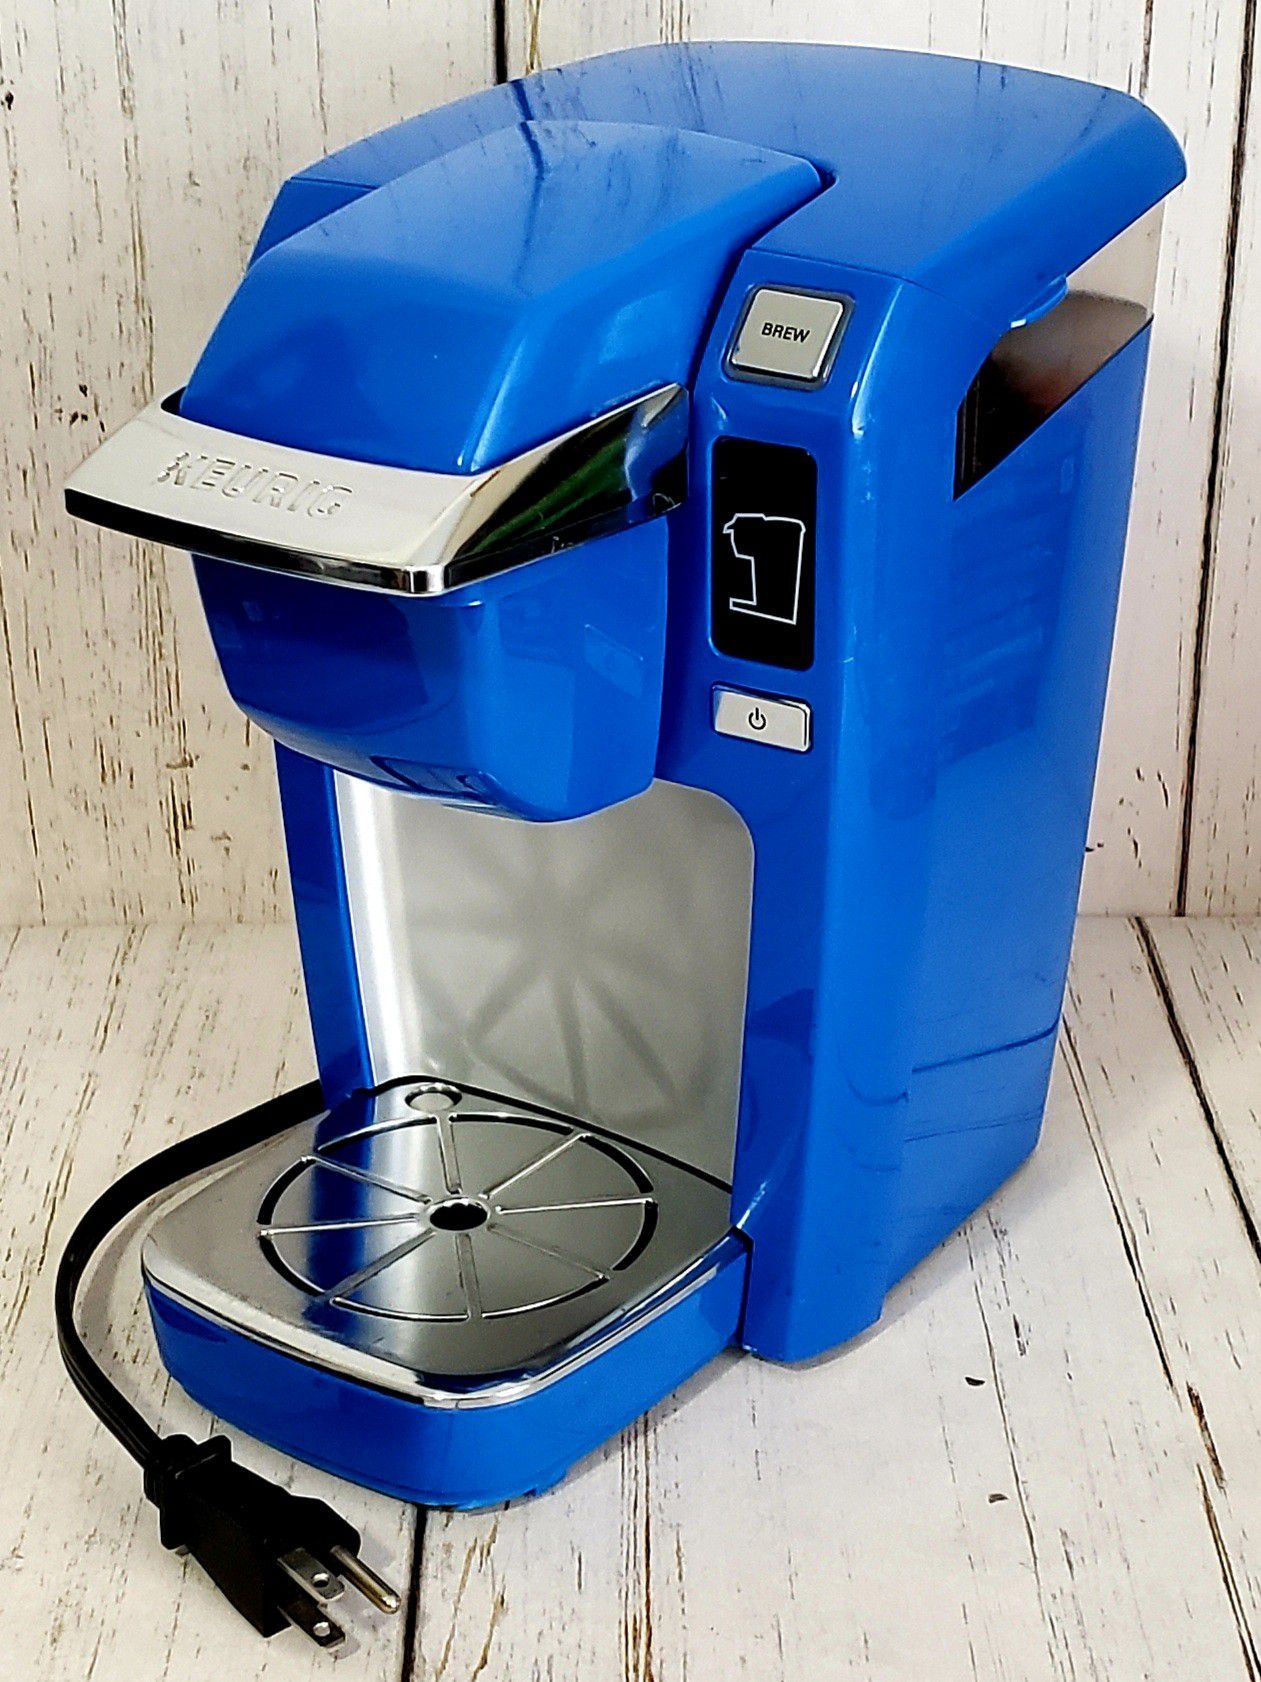 Keurig K10 Mini Plus Coffee Maker Brewing System Cobalt Blue - WORKS